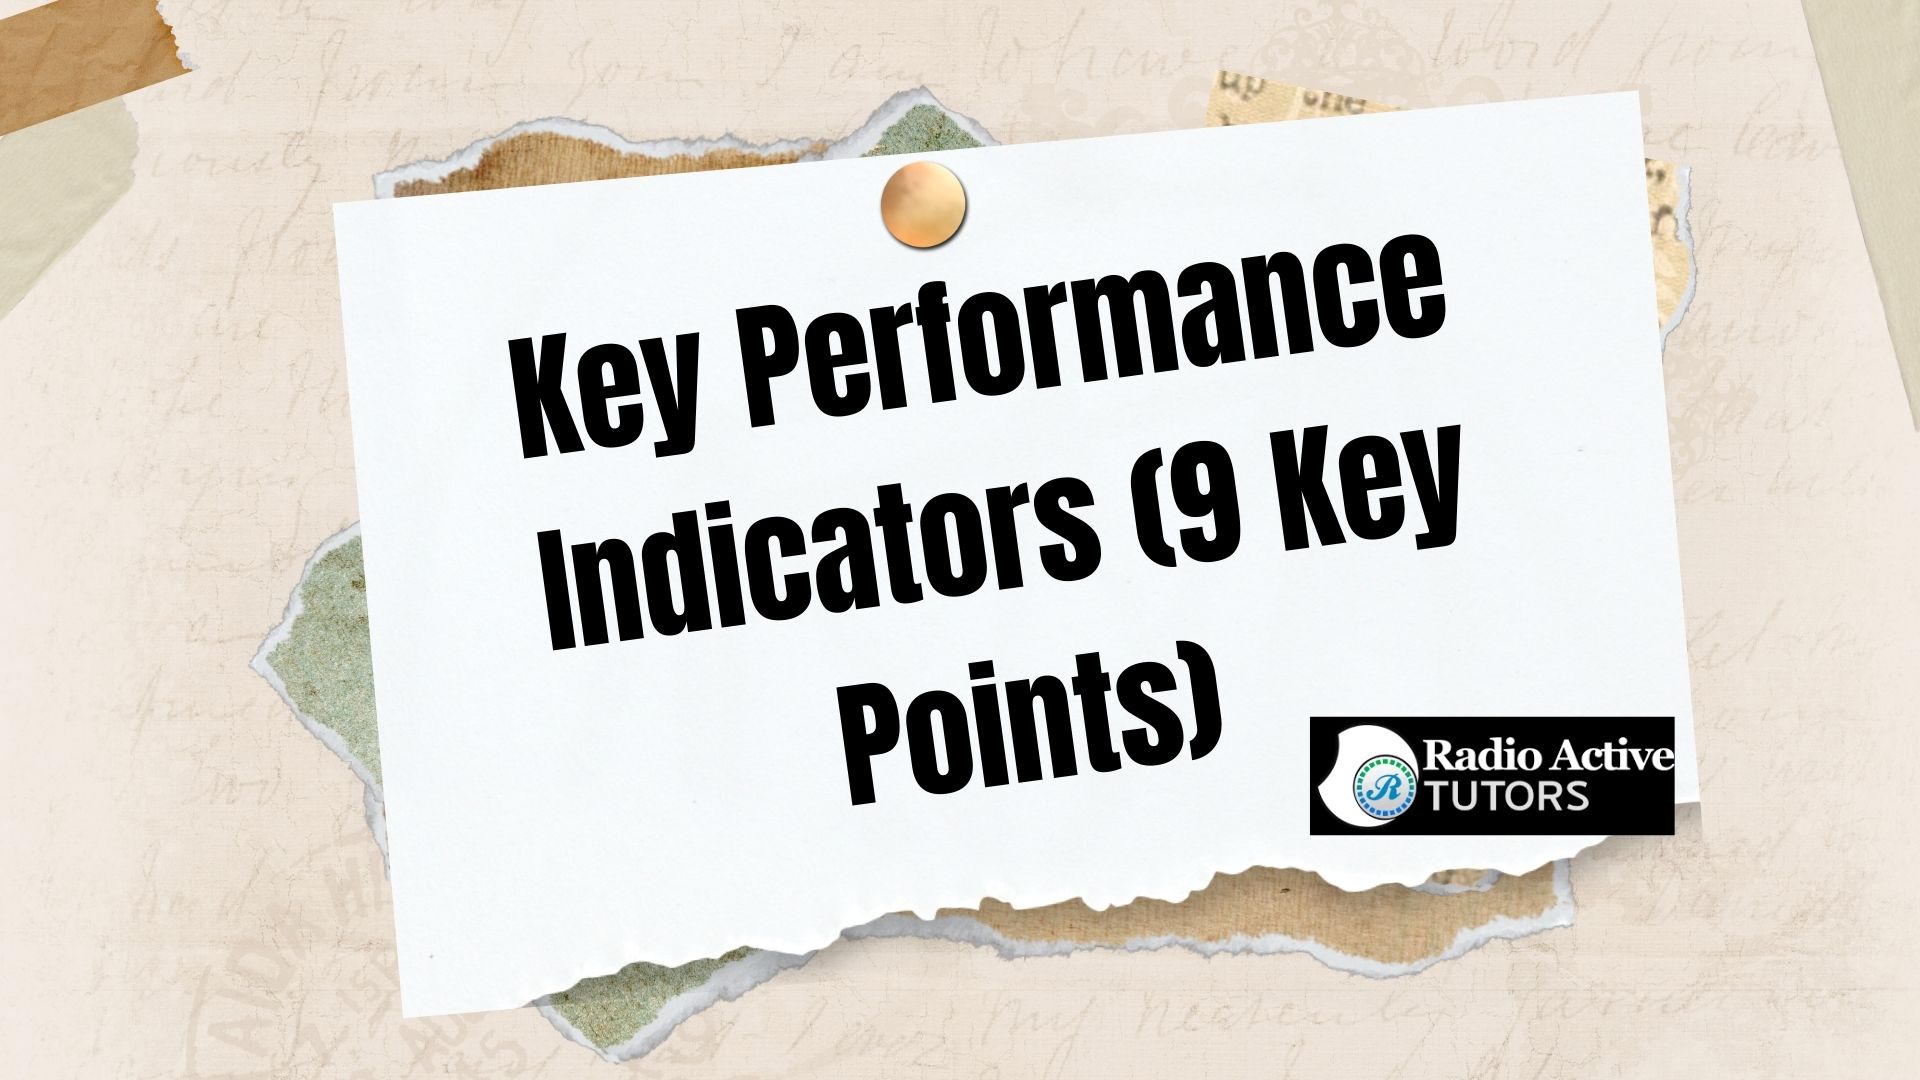 Key Performance Indicators (9 Key Points)